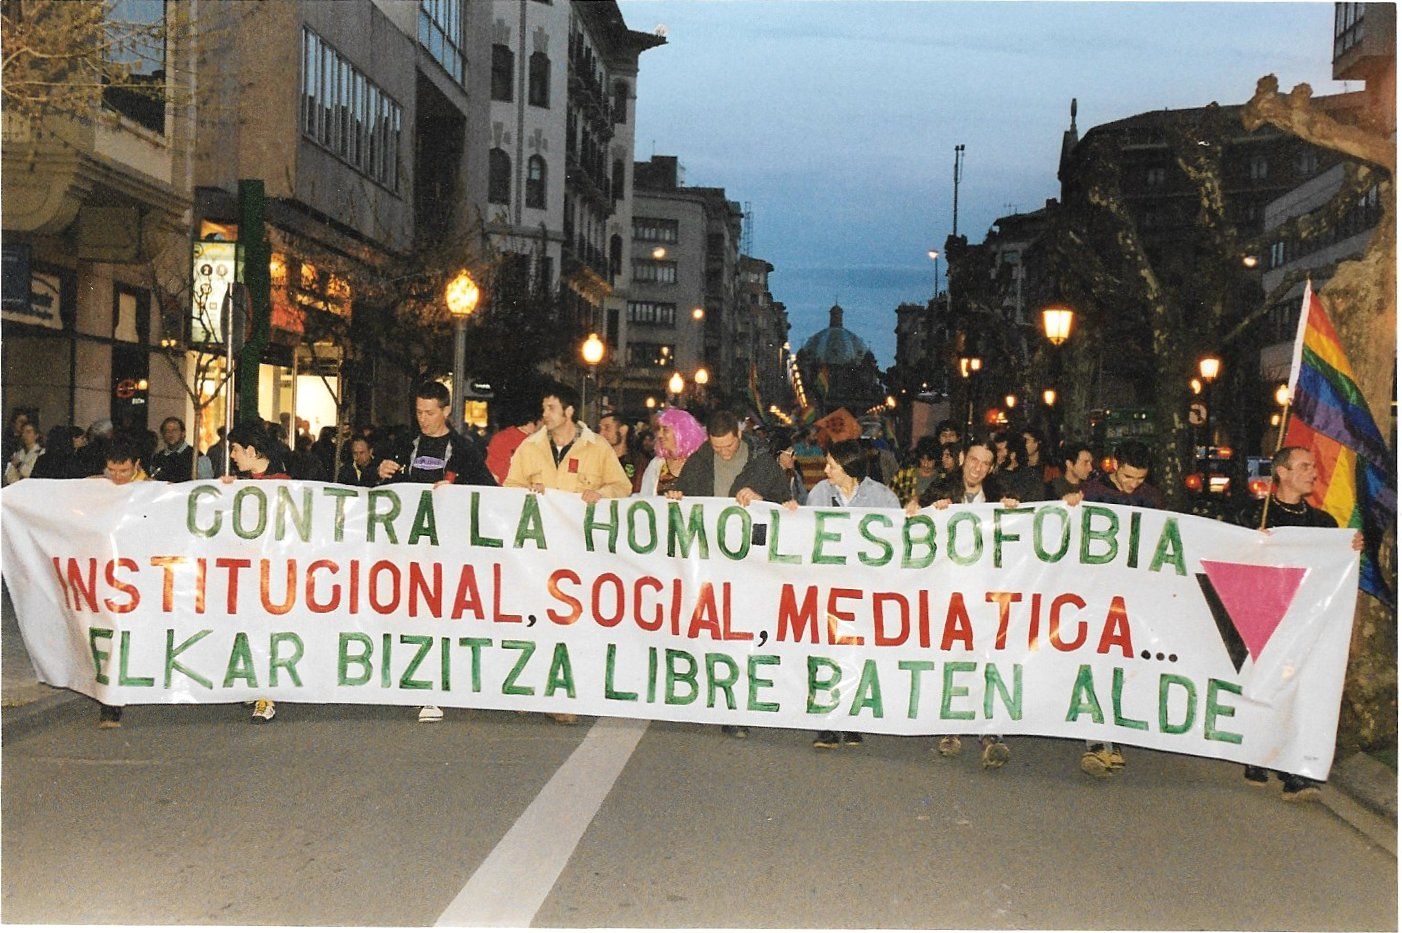 2001ean Iruñean egin zuten homolesbofobia sozial, mediatiko eta instituzionalaren aurkako manifestazioa. NABI